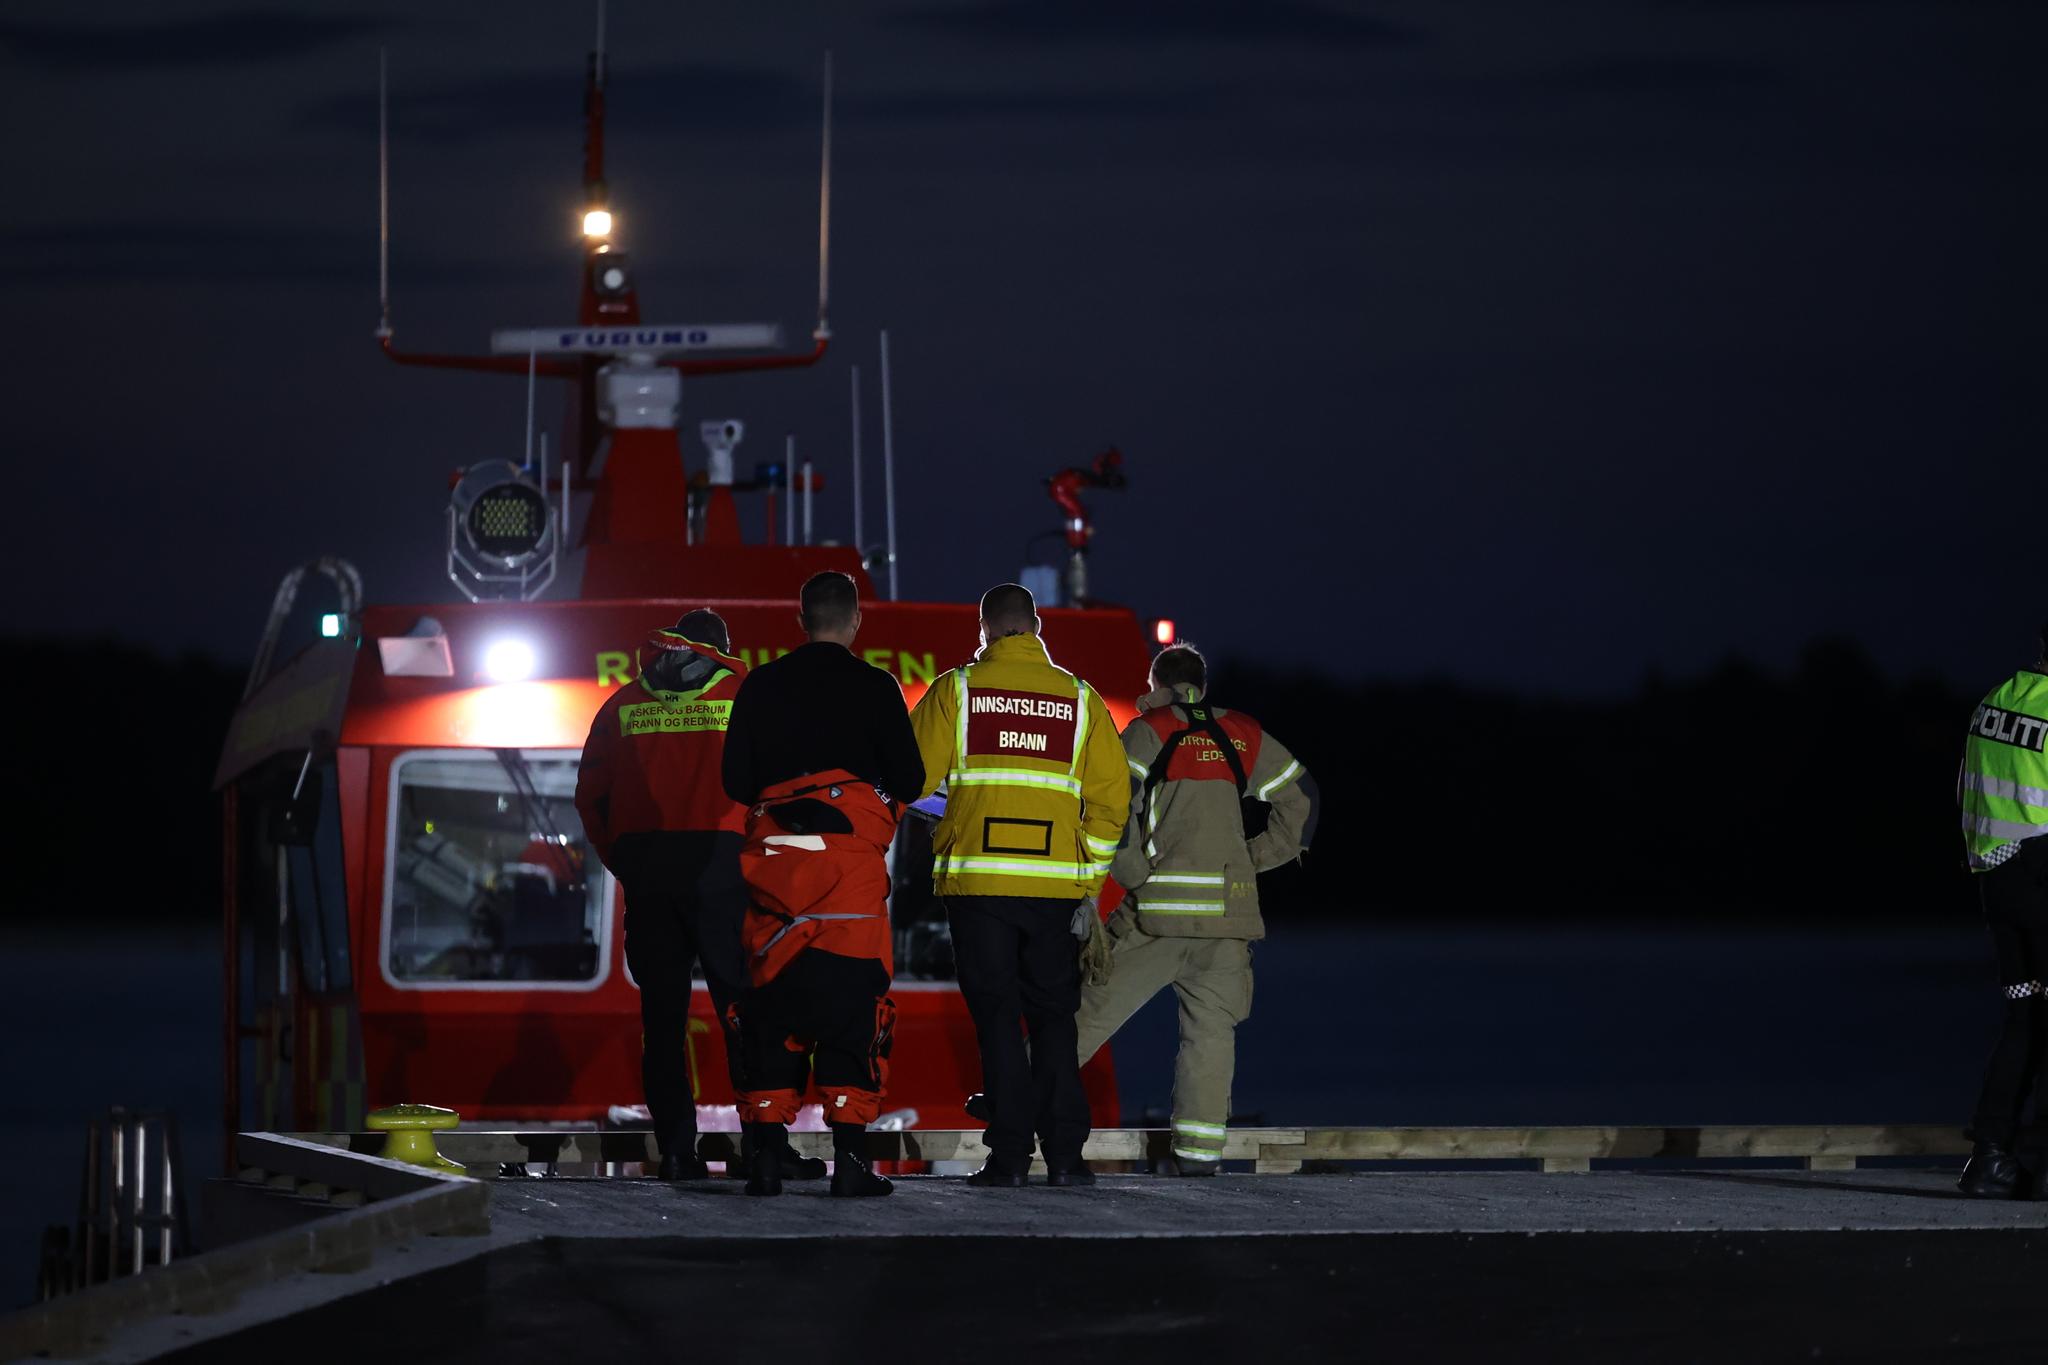 En redningsaksjon ble satt i gang for å redde opp fire personer som havnet i vannet etter at en båt gikk på grunn og sank ved Landøya i Asker natt til søndag. 